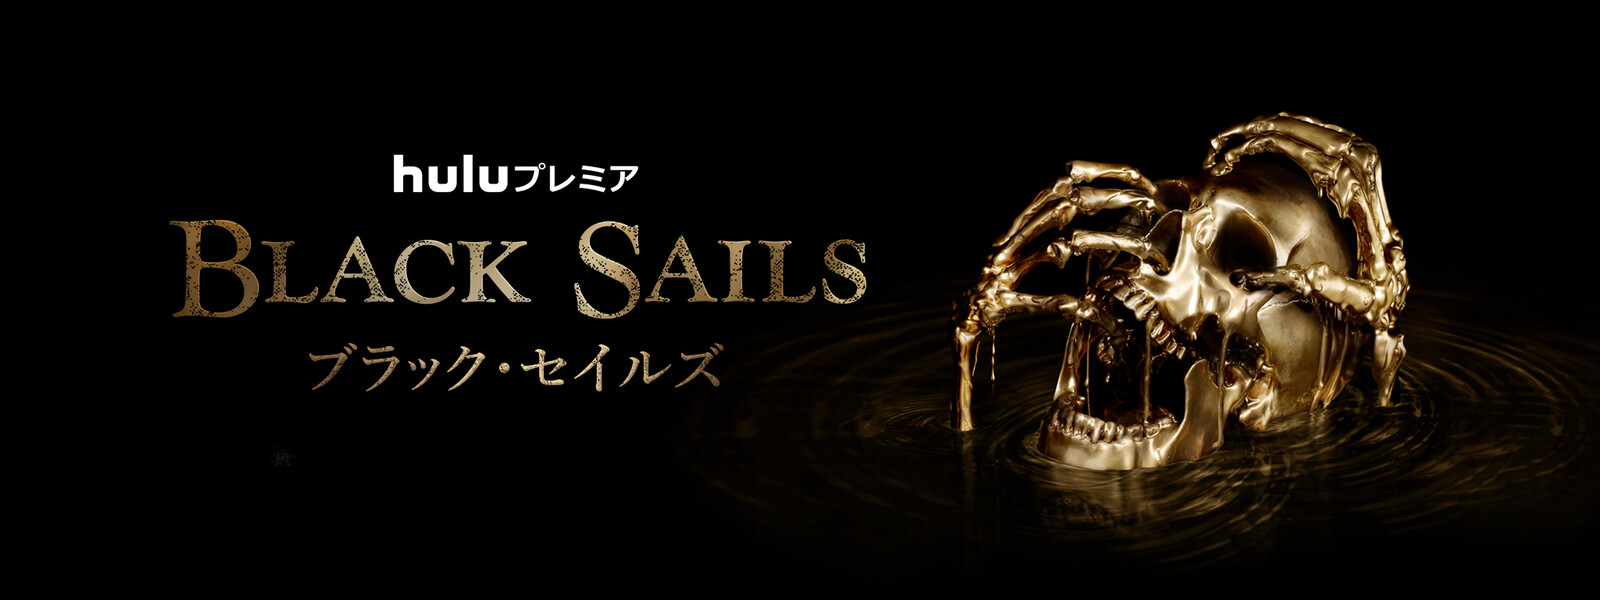 Black Sails／ブラック・セイルズ シーズン3の動画 - Black Sails／ブラック・セイルズ シーズン2